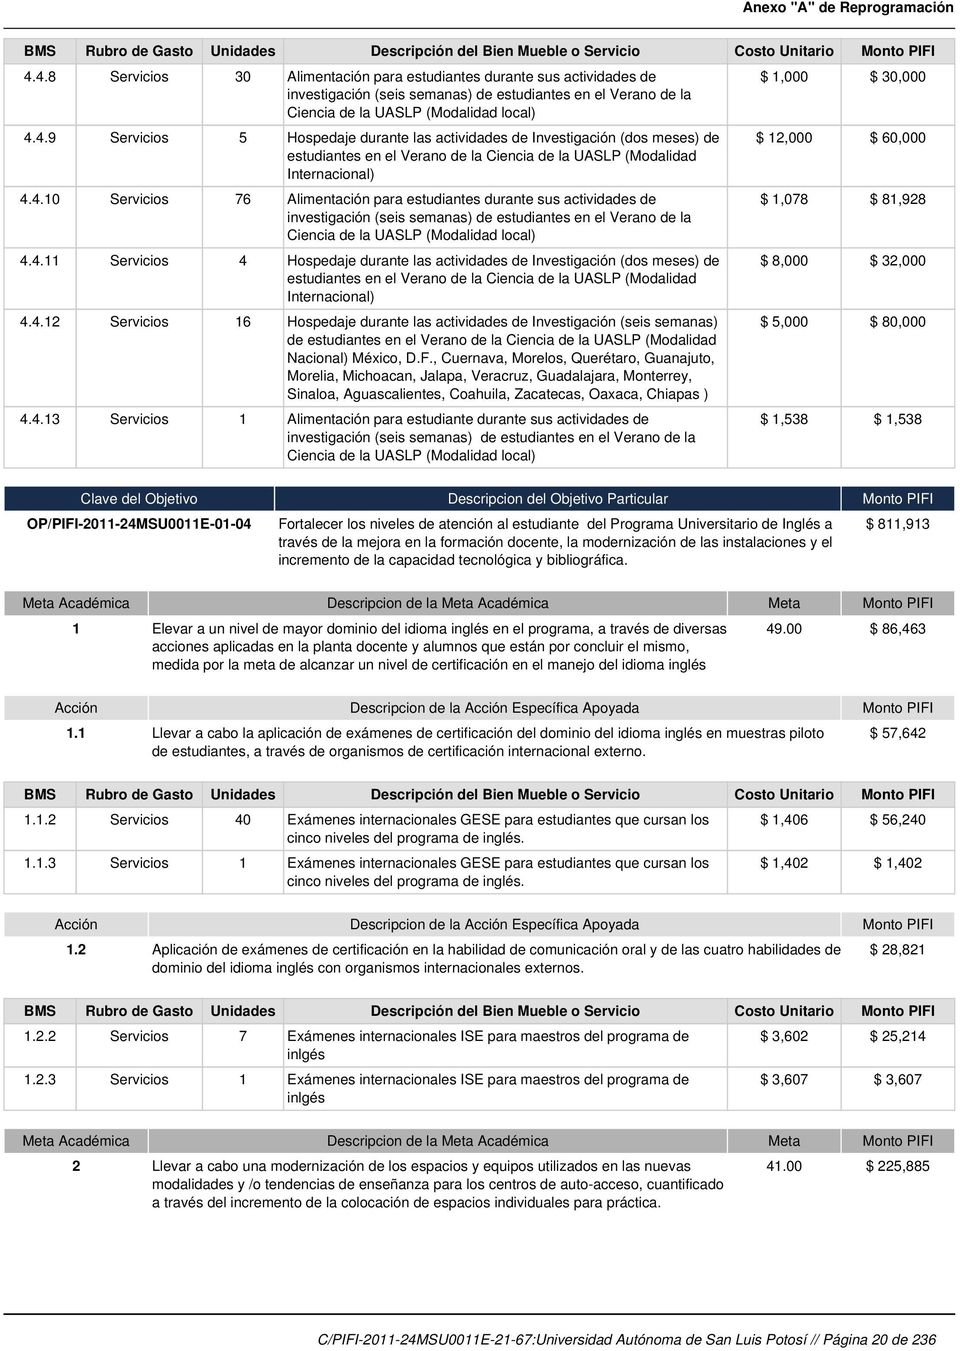 4.12 Servicios 16 Hospedaje durante las actividades de Investigación (seis semanas) de estudiantes en el Verano de la Ciencia de la UASLP (Modalidad Nacional) México, D.F.